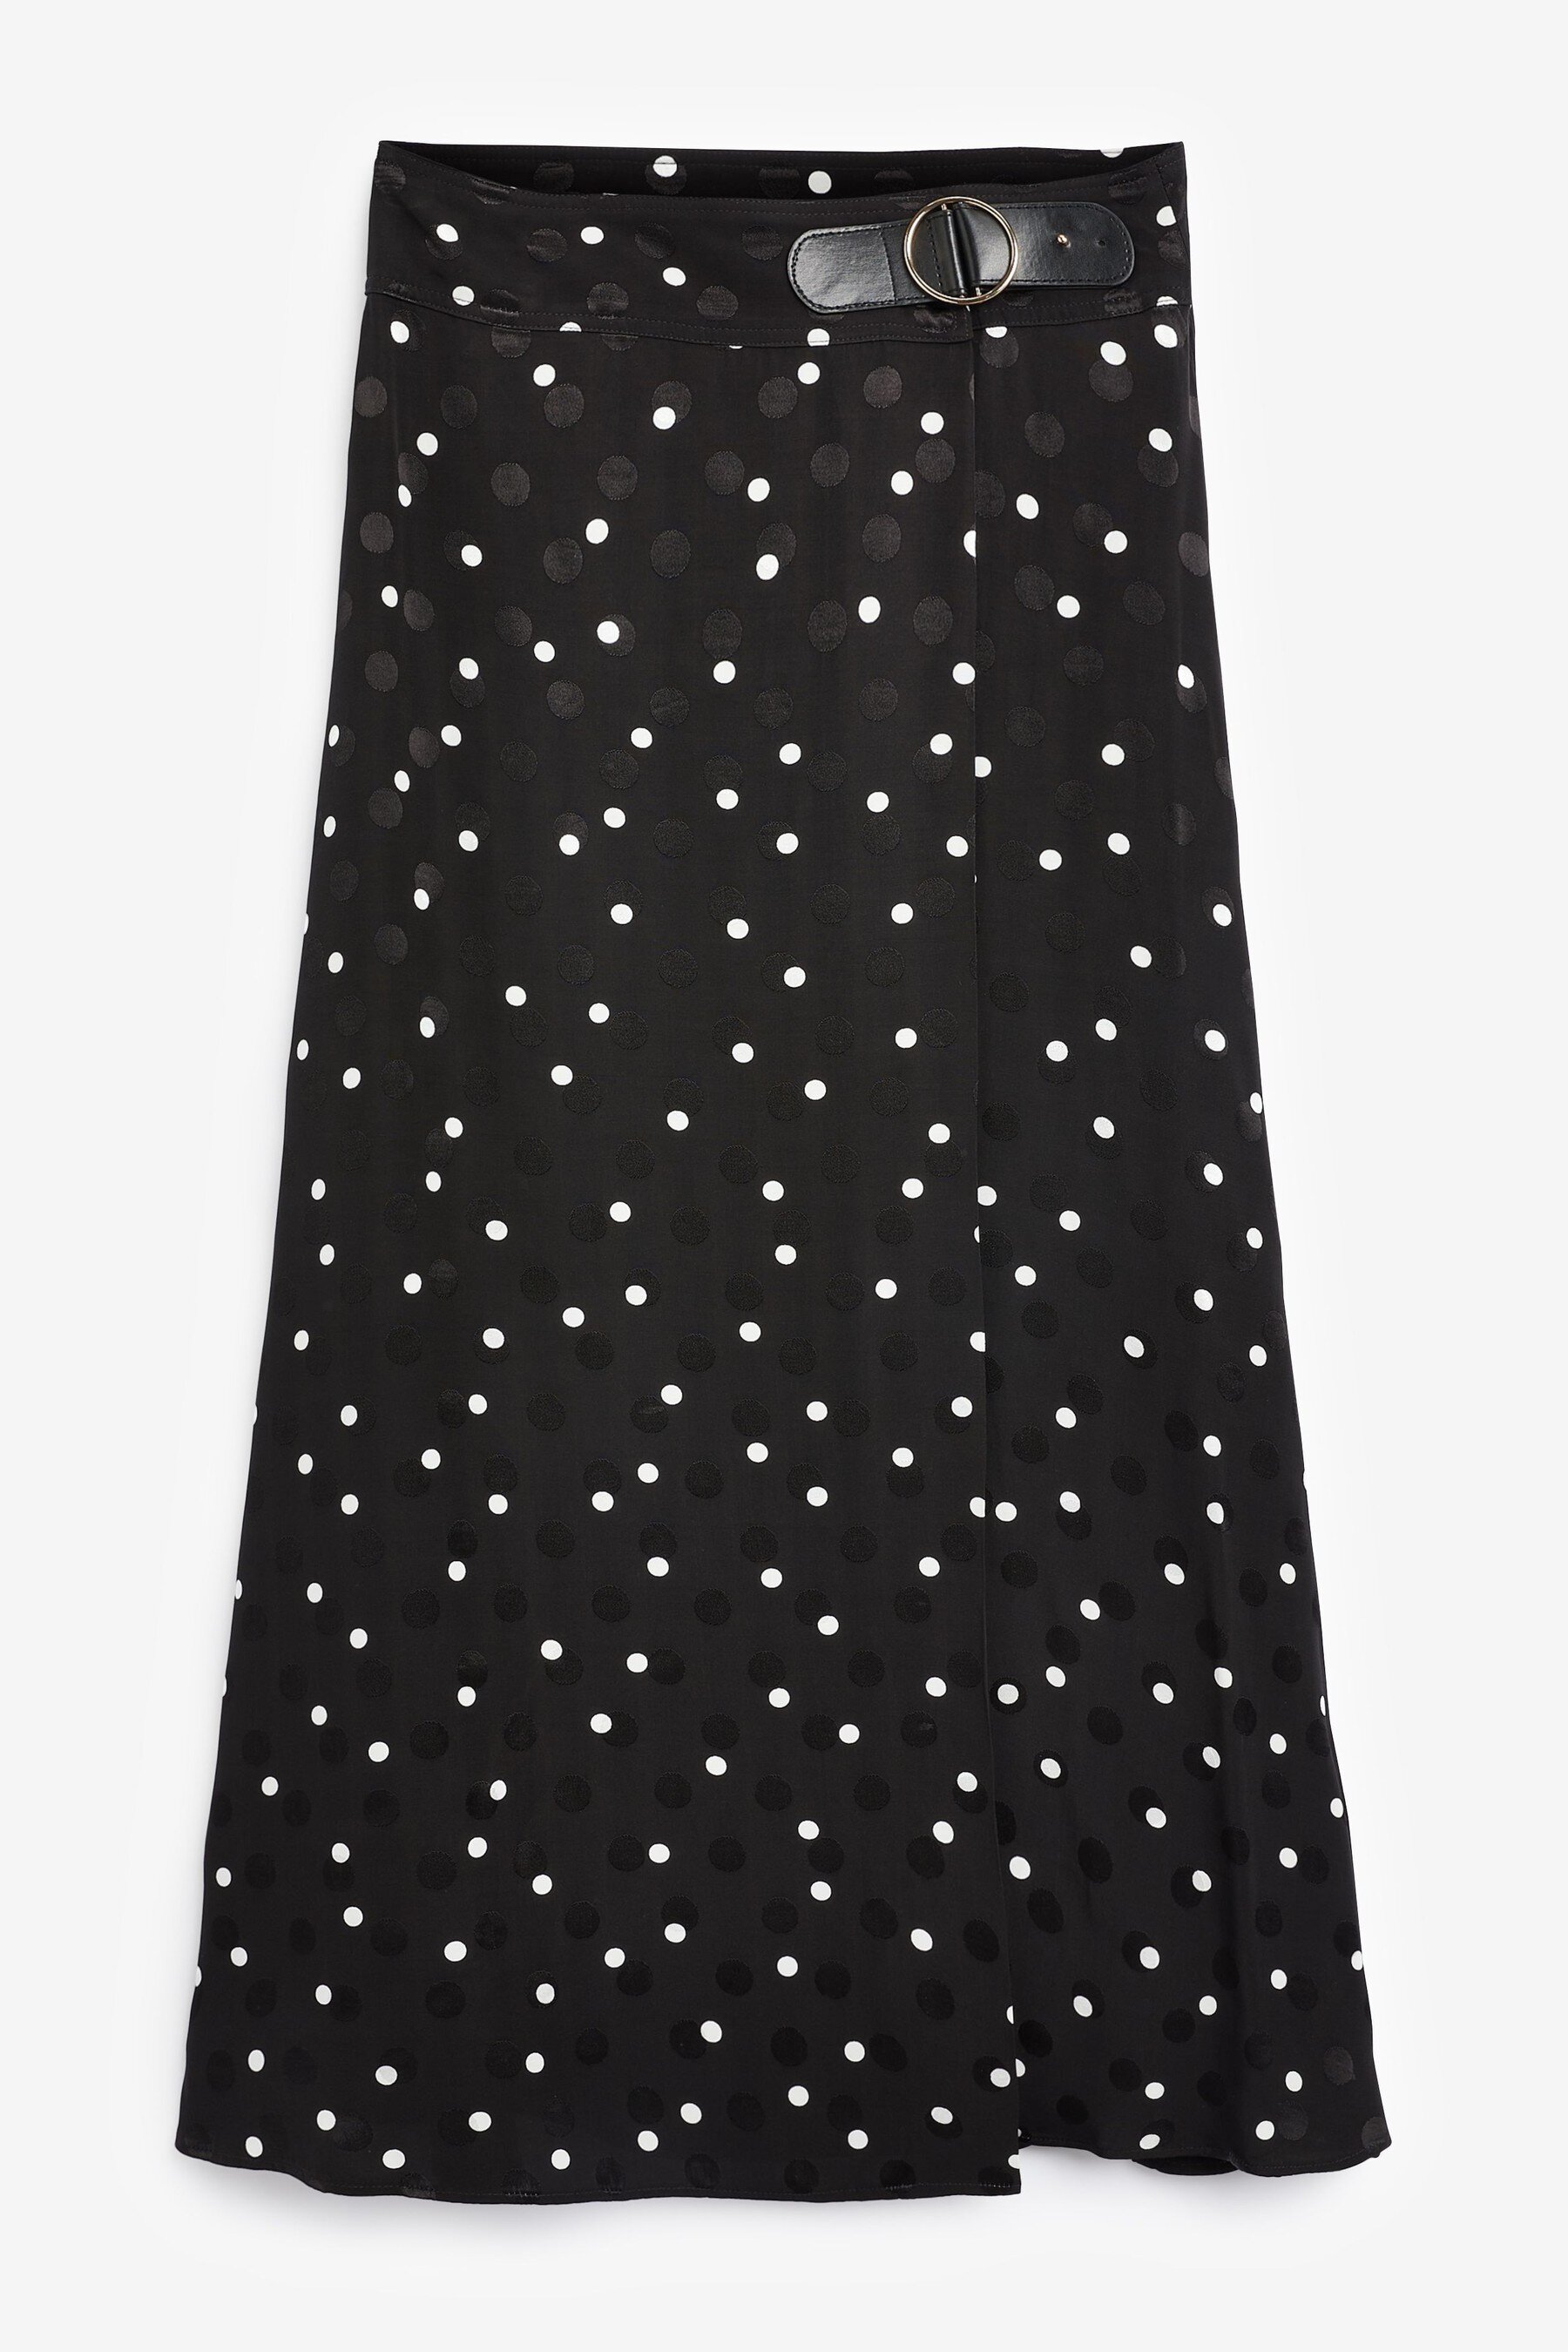 Skirt, £36, Next